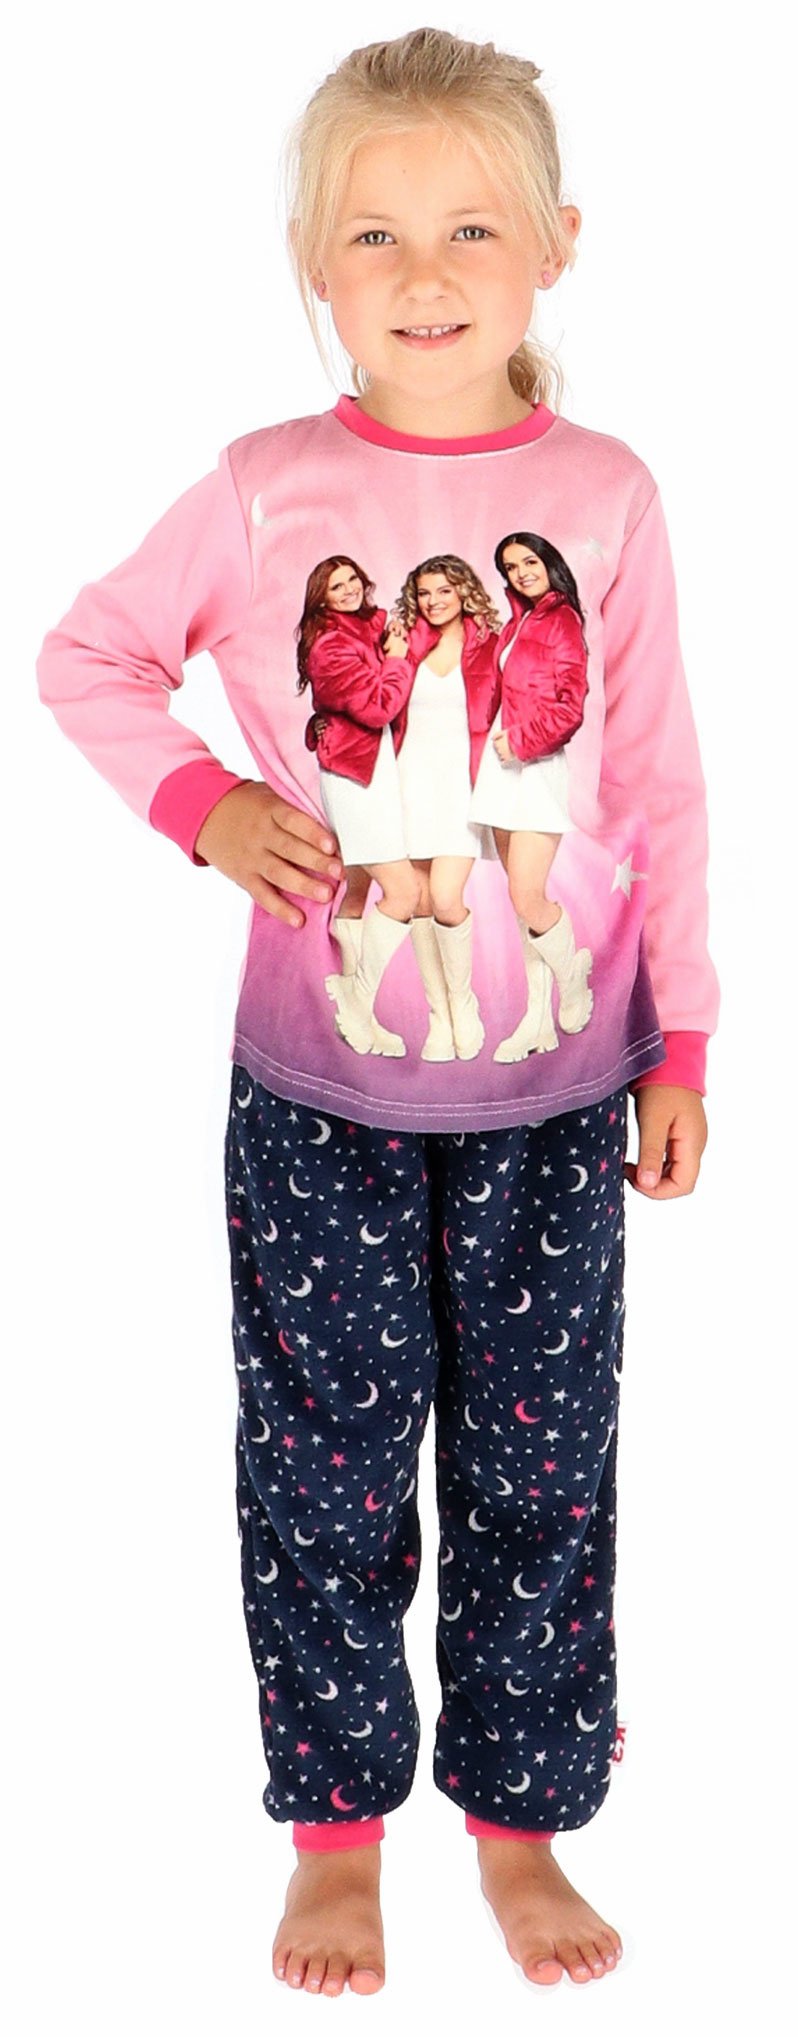 Meisjes K3 jasje kleur roze velours & antracietgrijs met print fleecestof - Bodyfashion Born